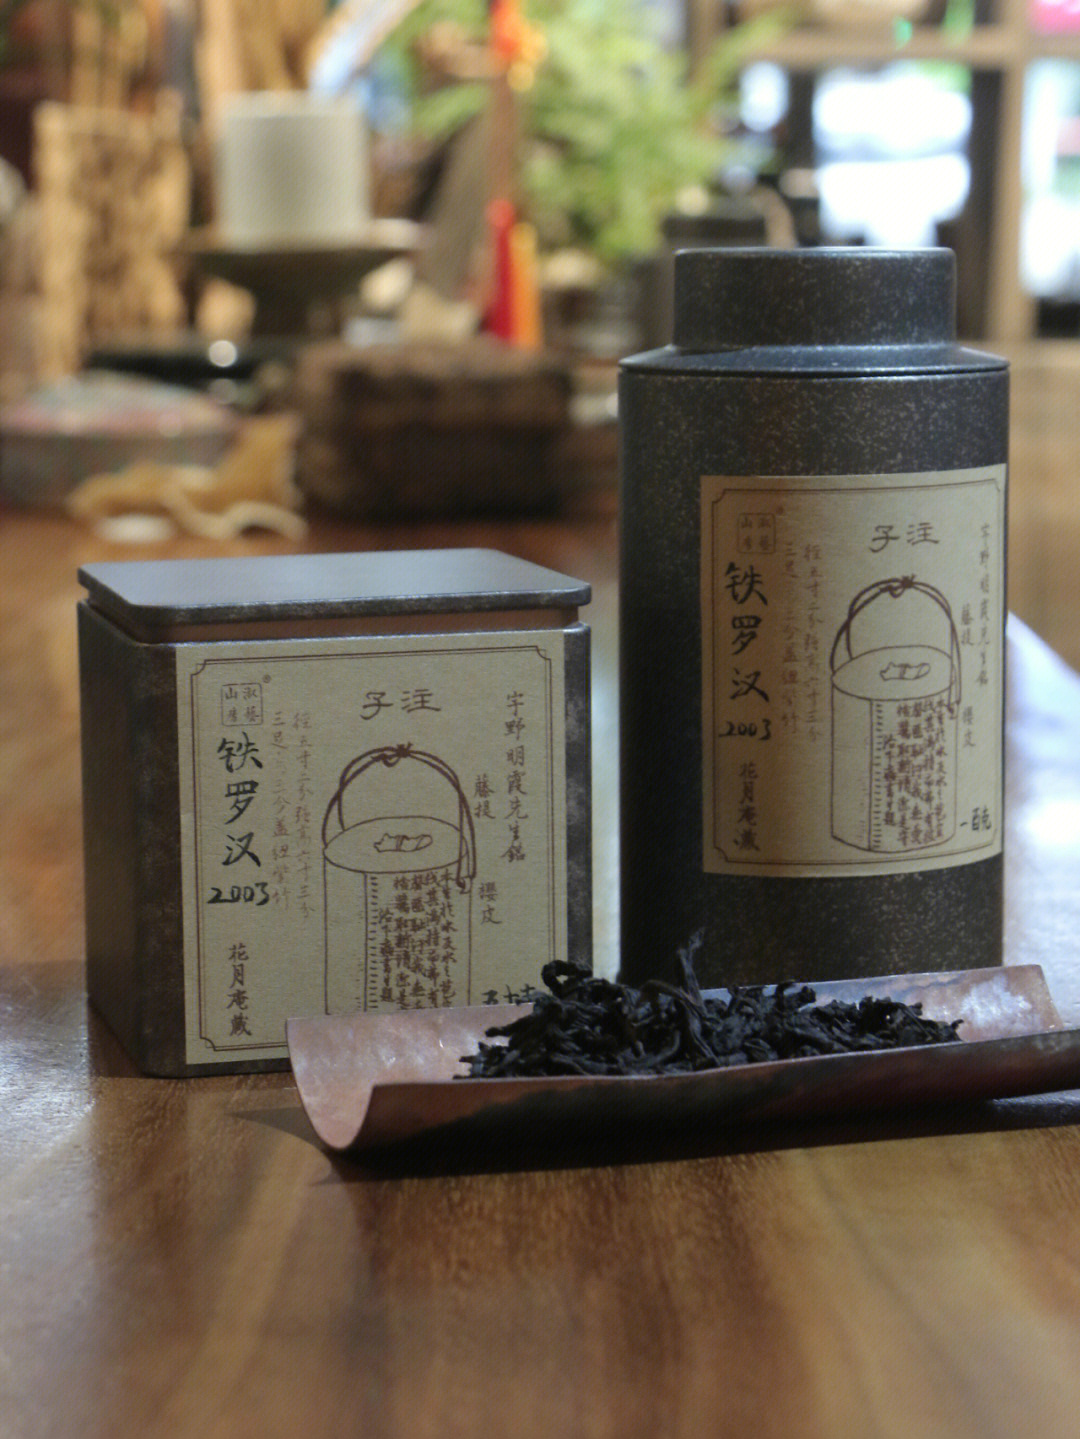 龙雀铁罗汉茶价位图片